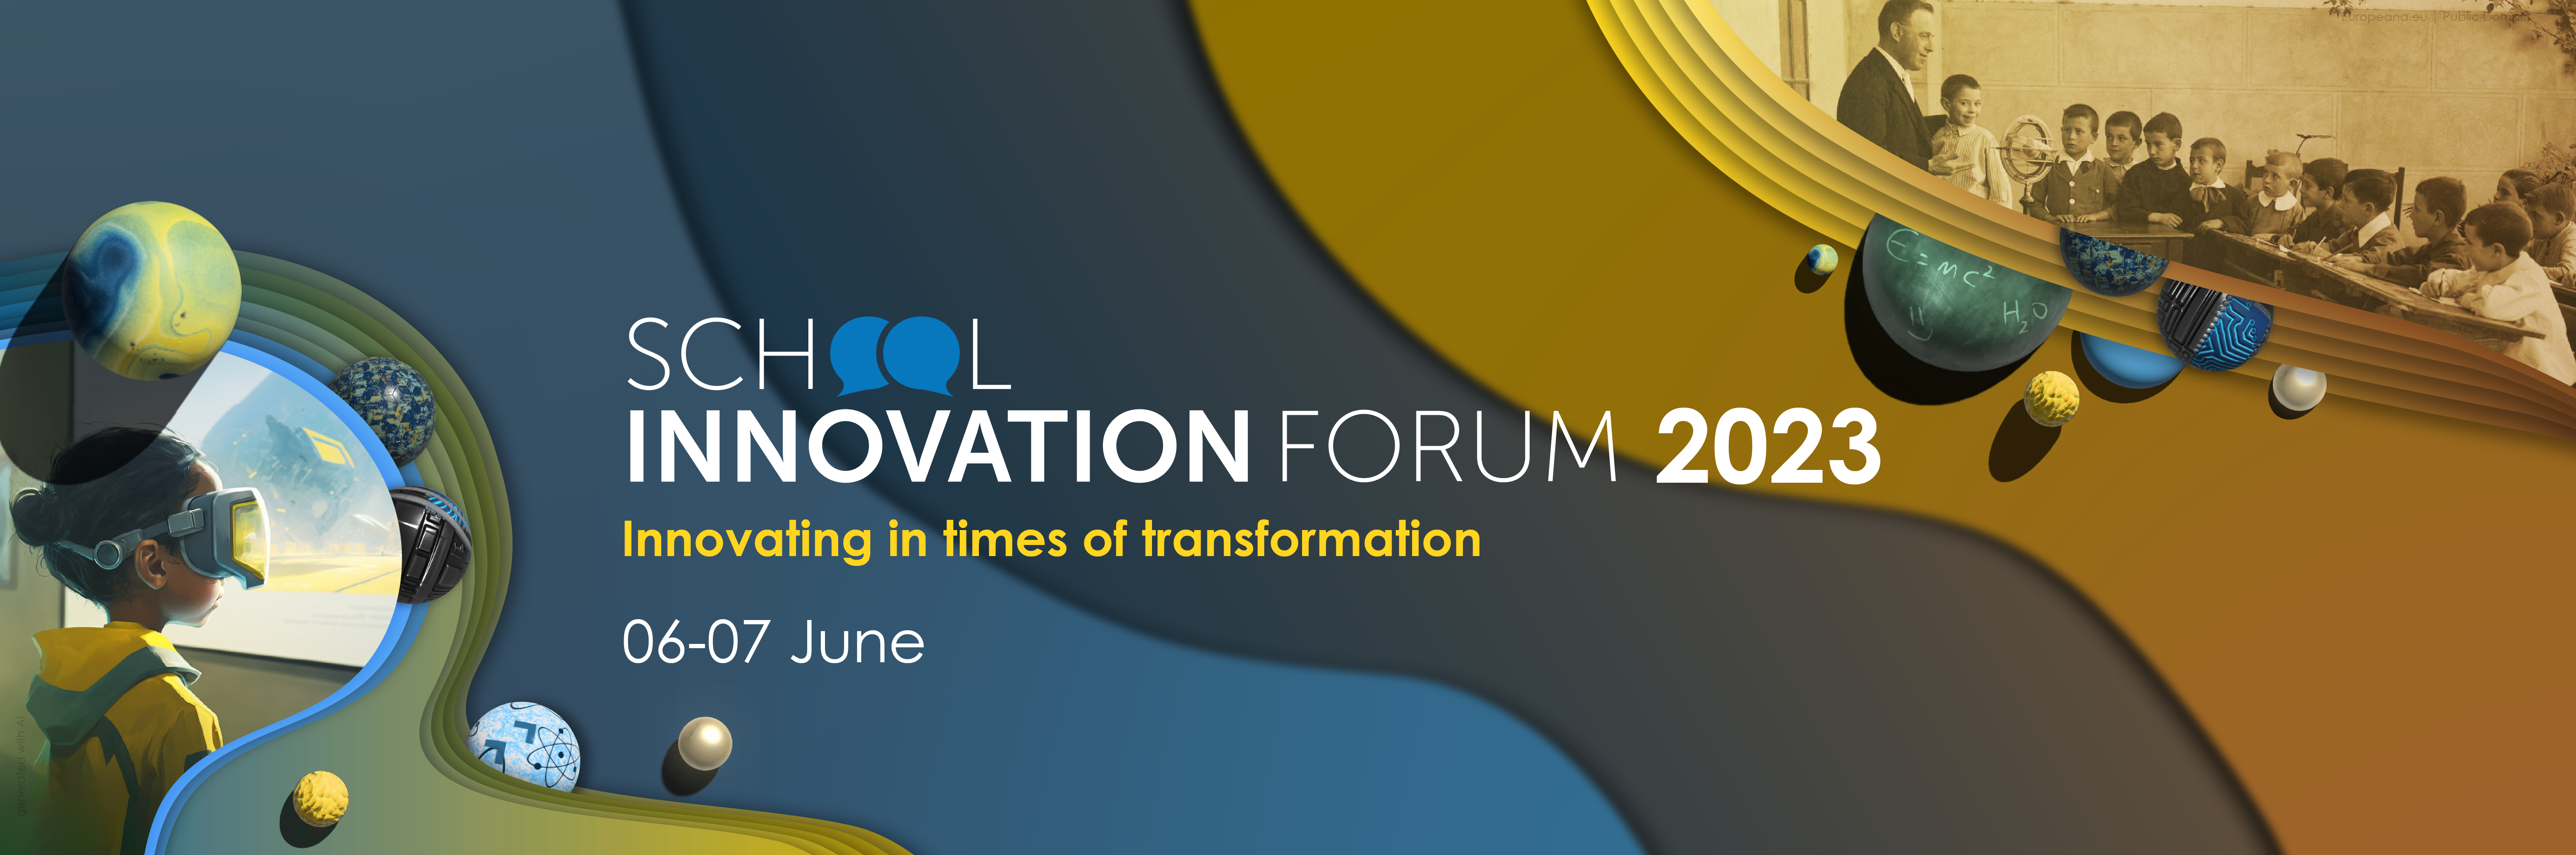 School Innovation Forum 2023